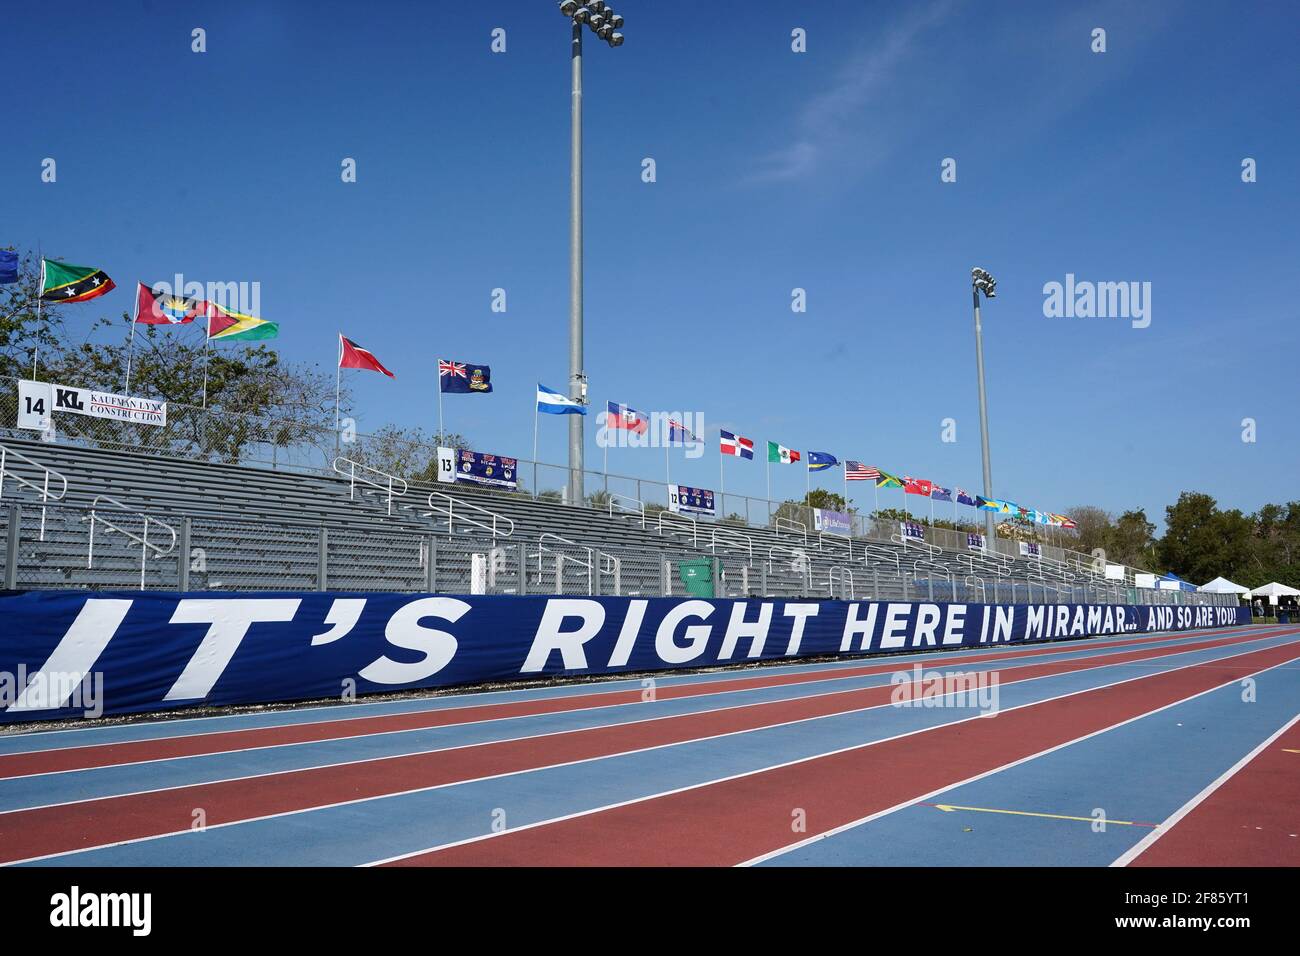 Vista general del estadio de atletismo del complejo deportivo Ansin, sábado 10 de abril de 2021, en Miramar, Florida Foto de stock